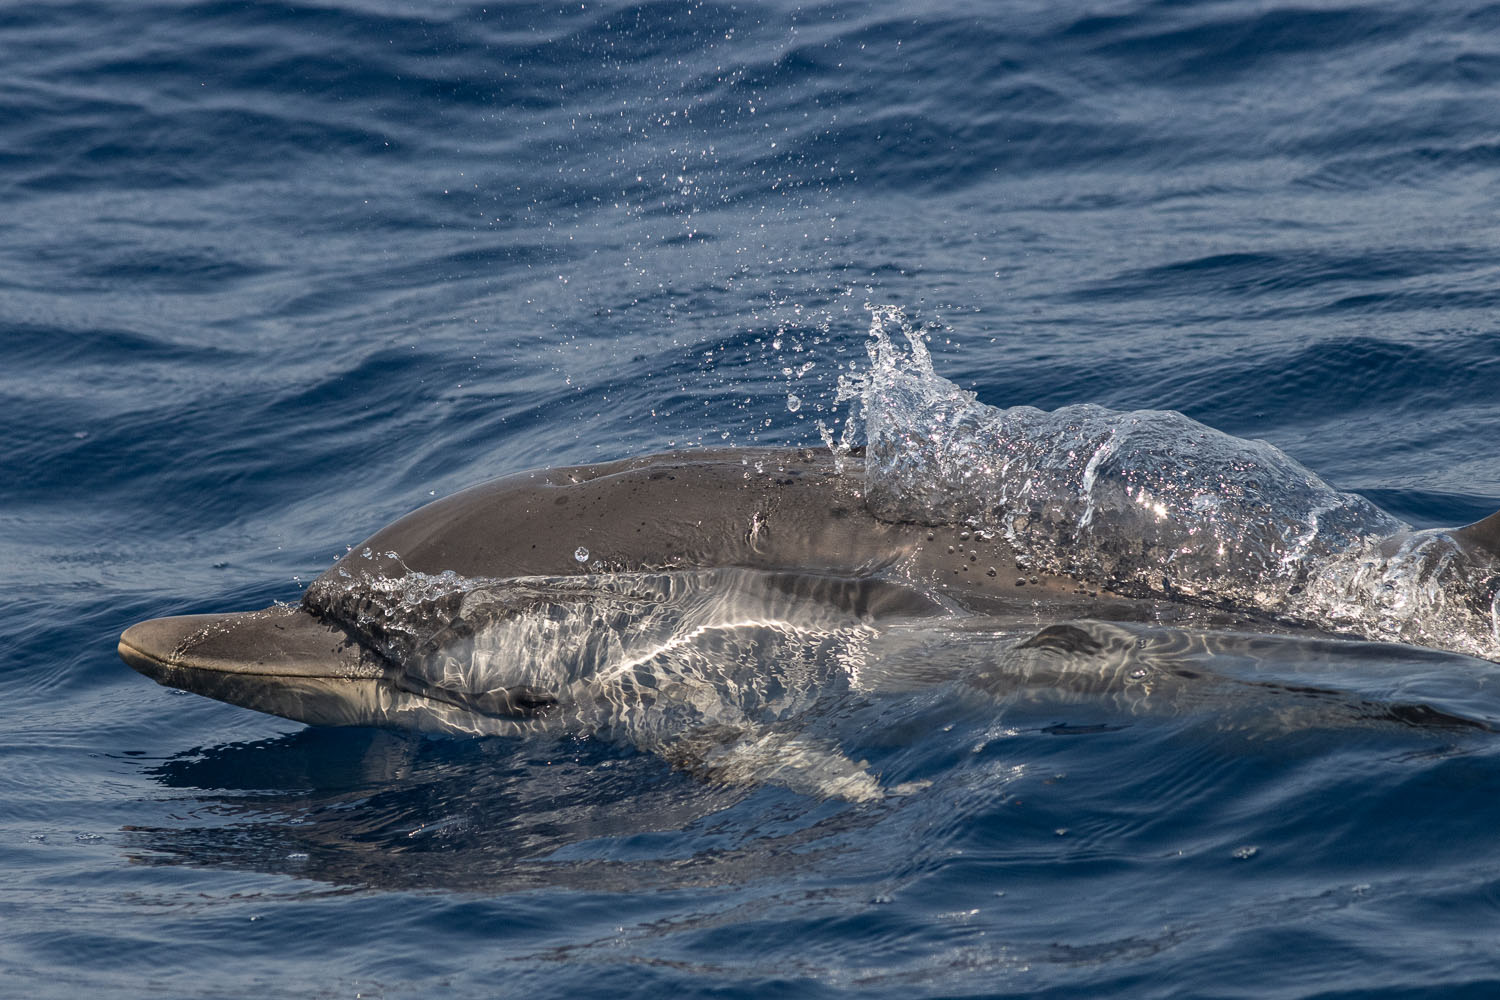 voyage scientifique cetaces de mediterranee 19